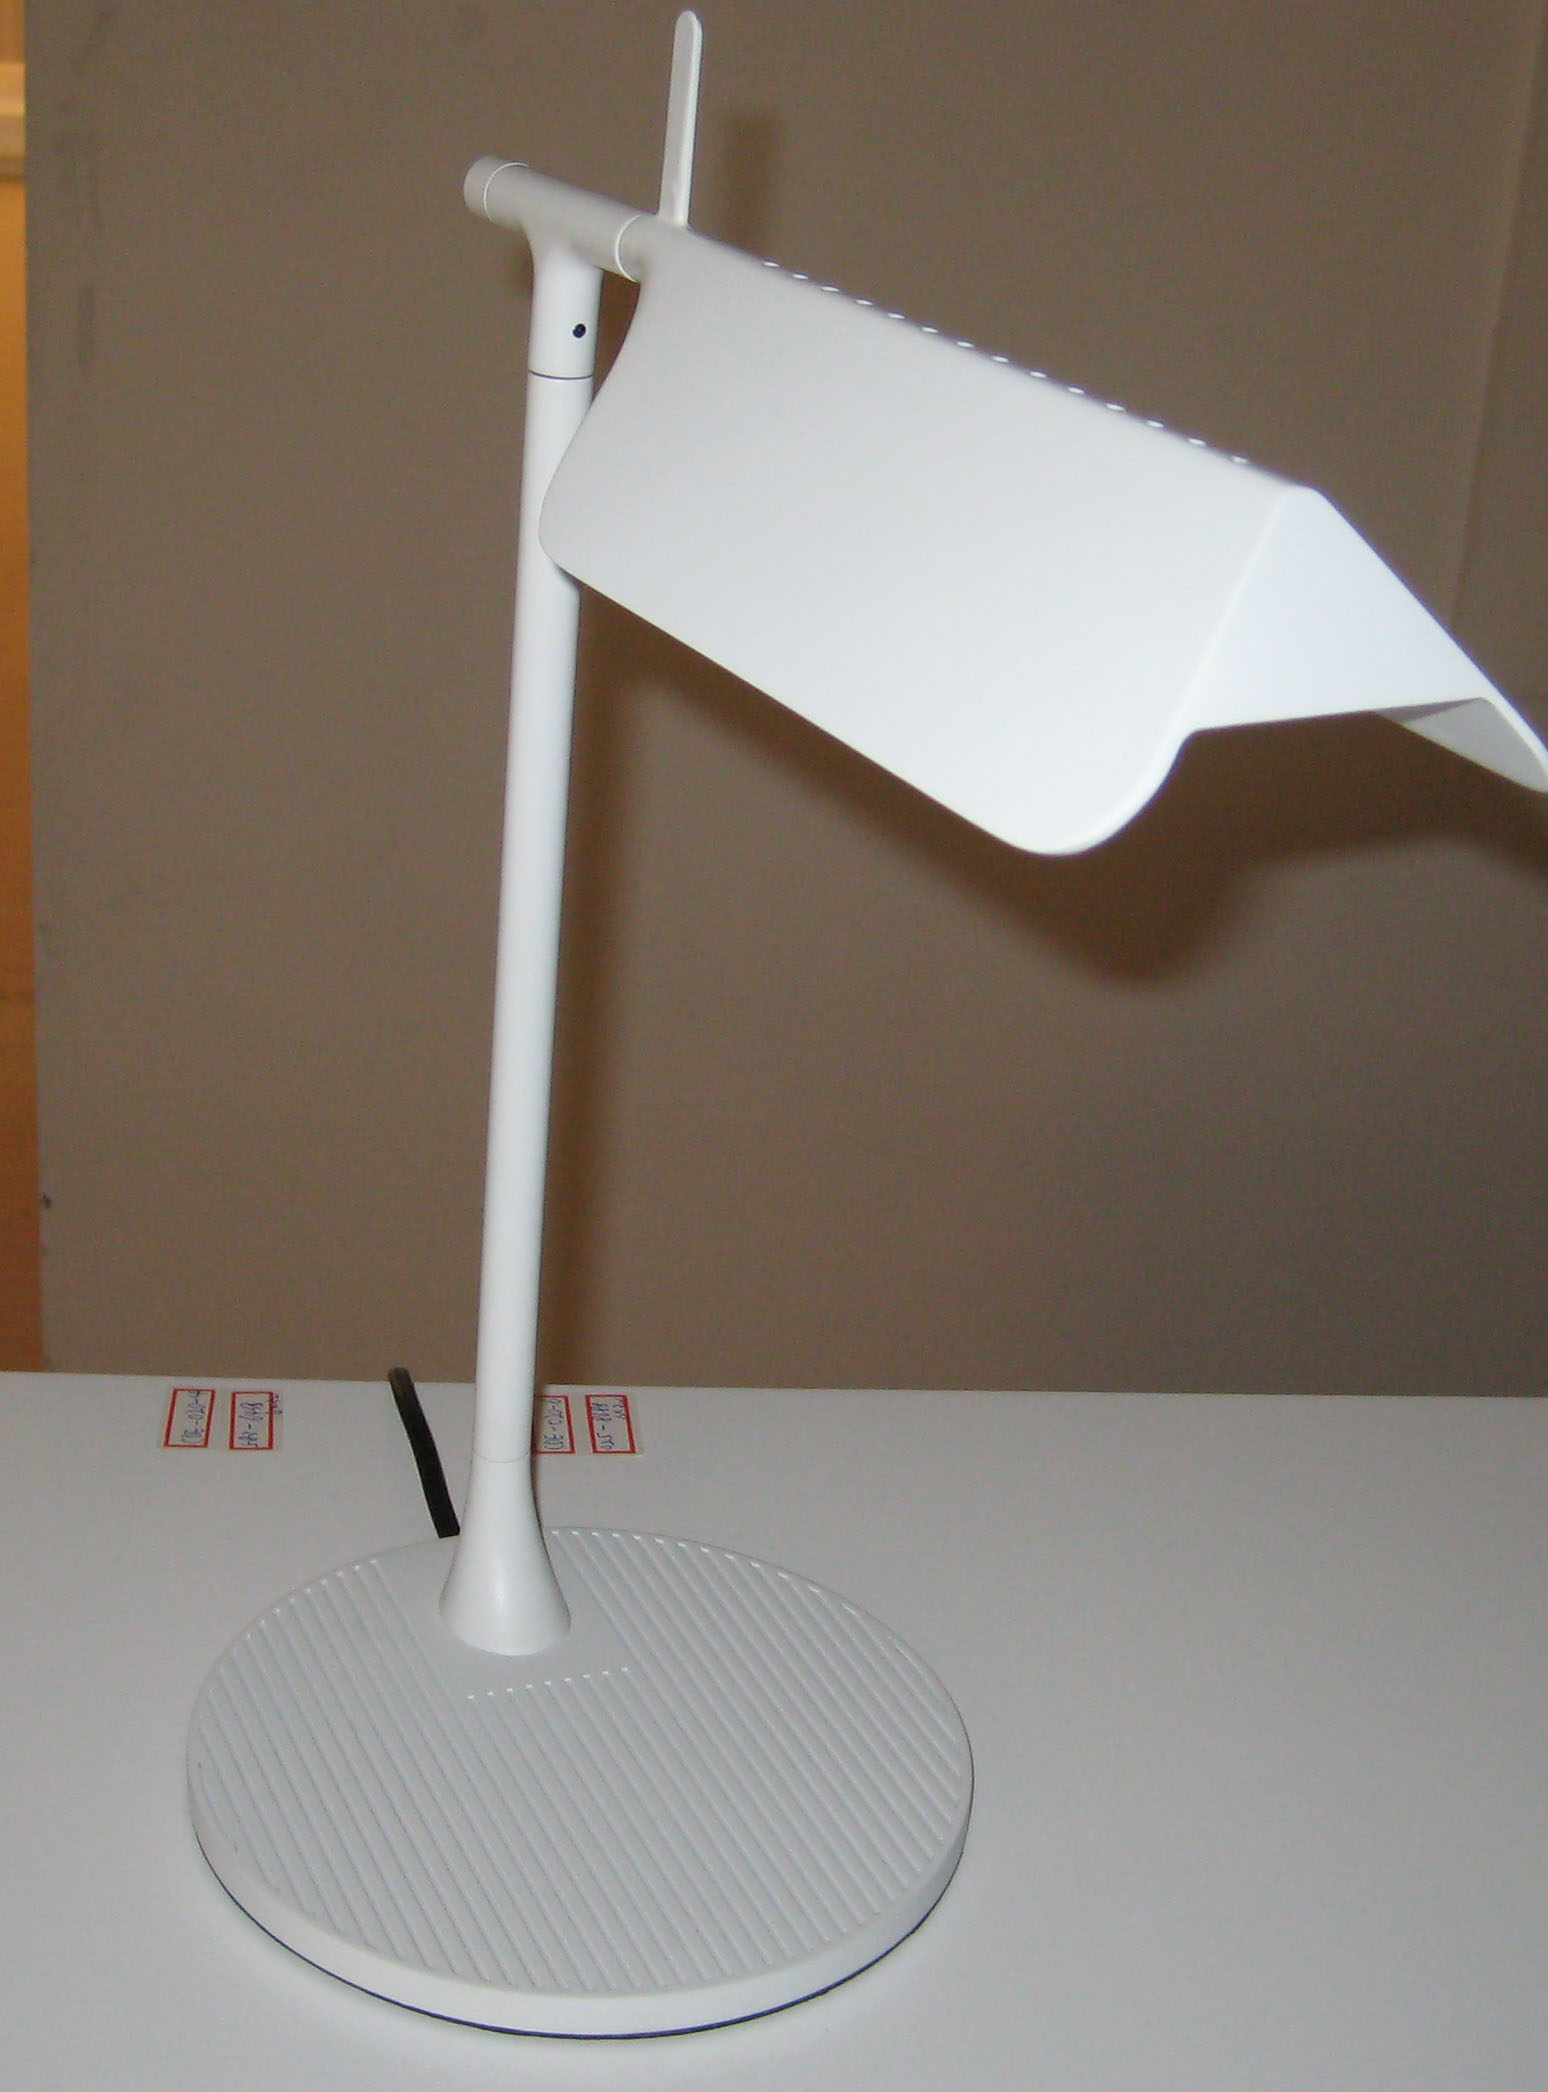 Современные крытые алюминиевые светодиодные настольные лампы (863T)